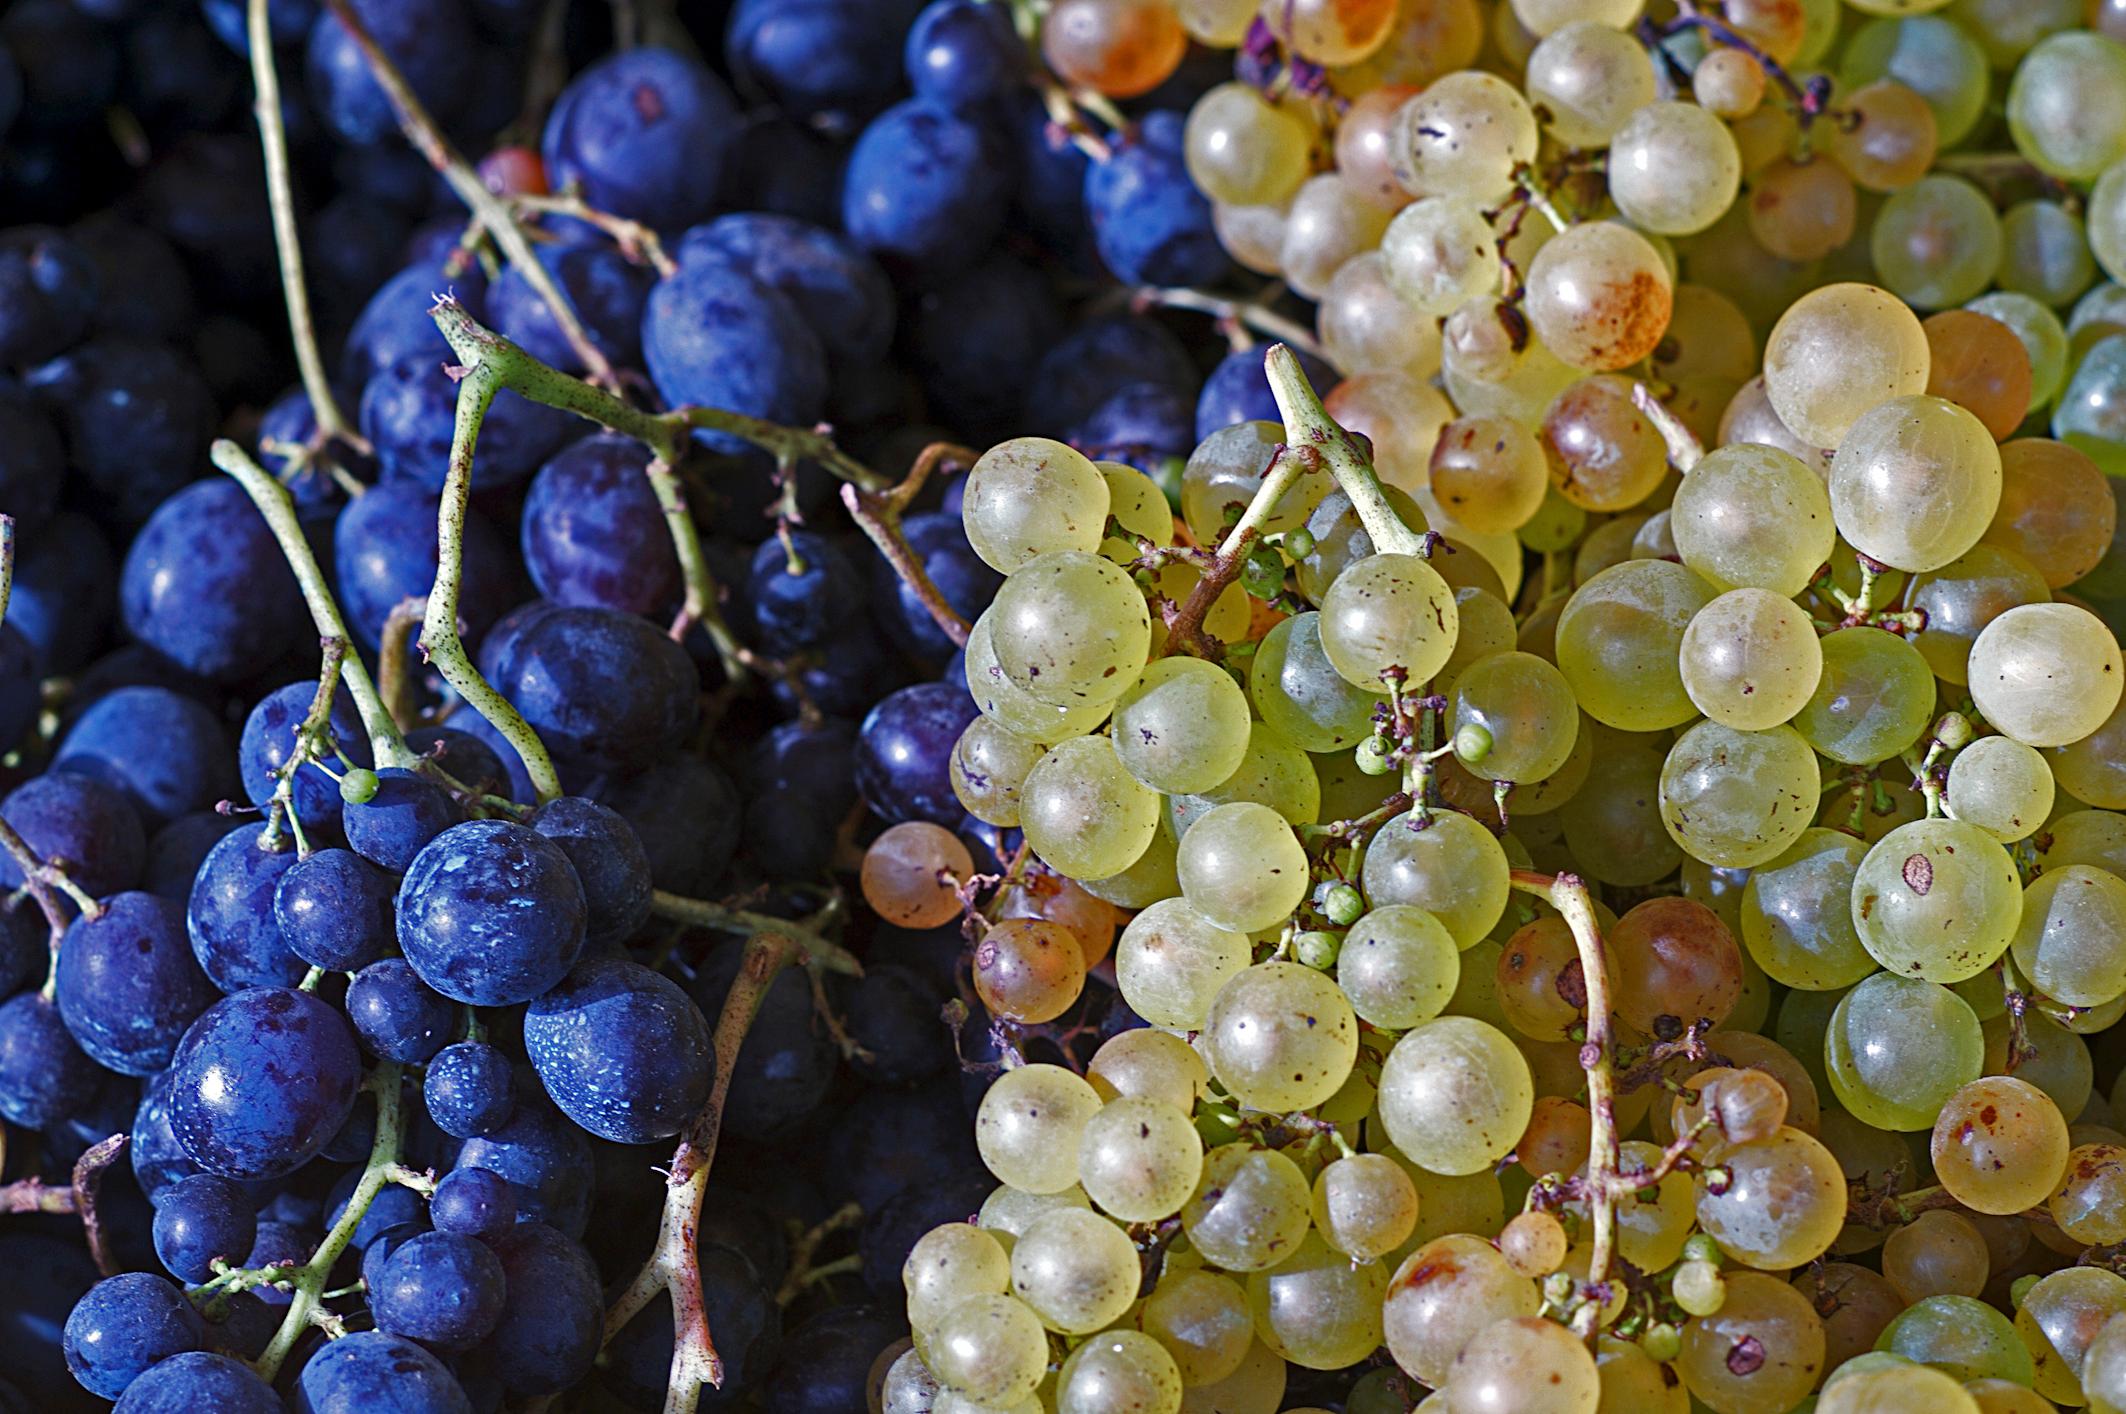 In wärmeren Gebieten oder an Hauswänden wachsen auch bei uns Tafeltrauben. Um regionale Weintrauben zu essen, muss man nur den Erntezeitpunkt abwarten können. Der Genuss ist dann umso größer.